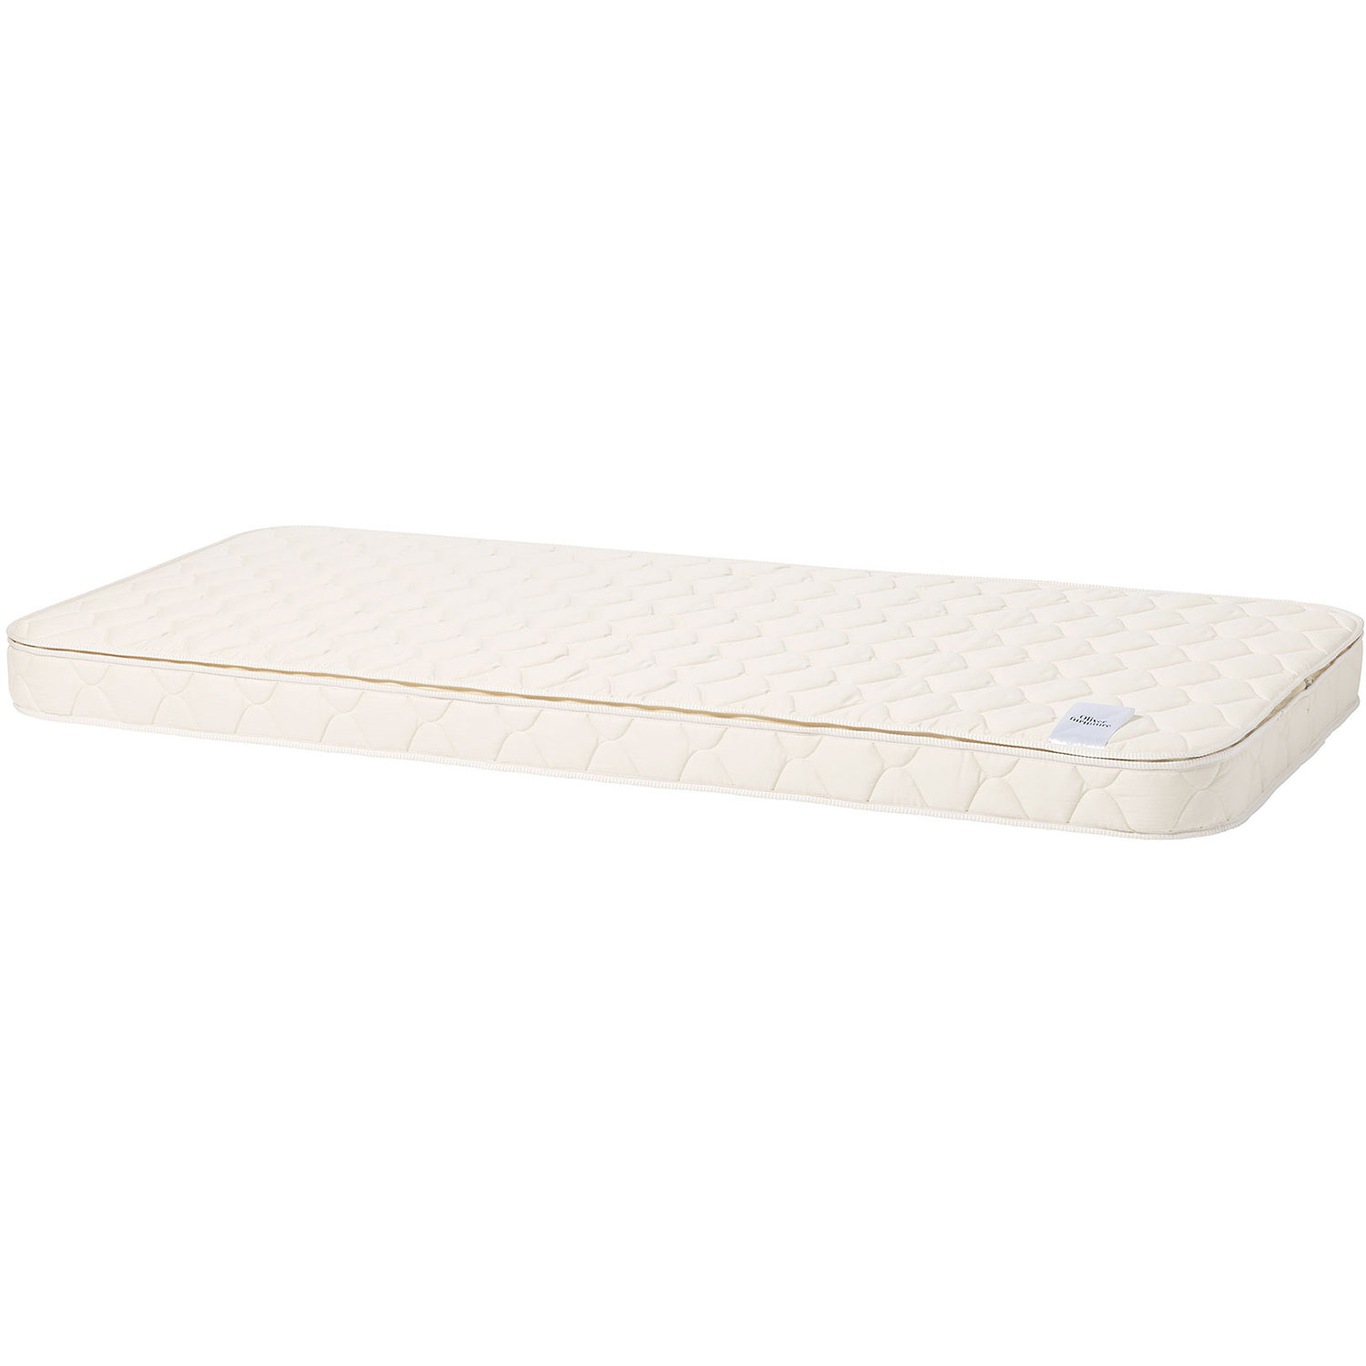 Wood mattress, all beds (200cm)